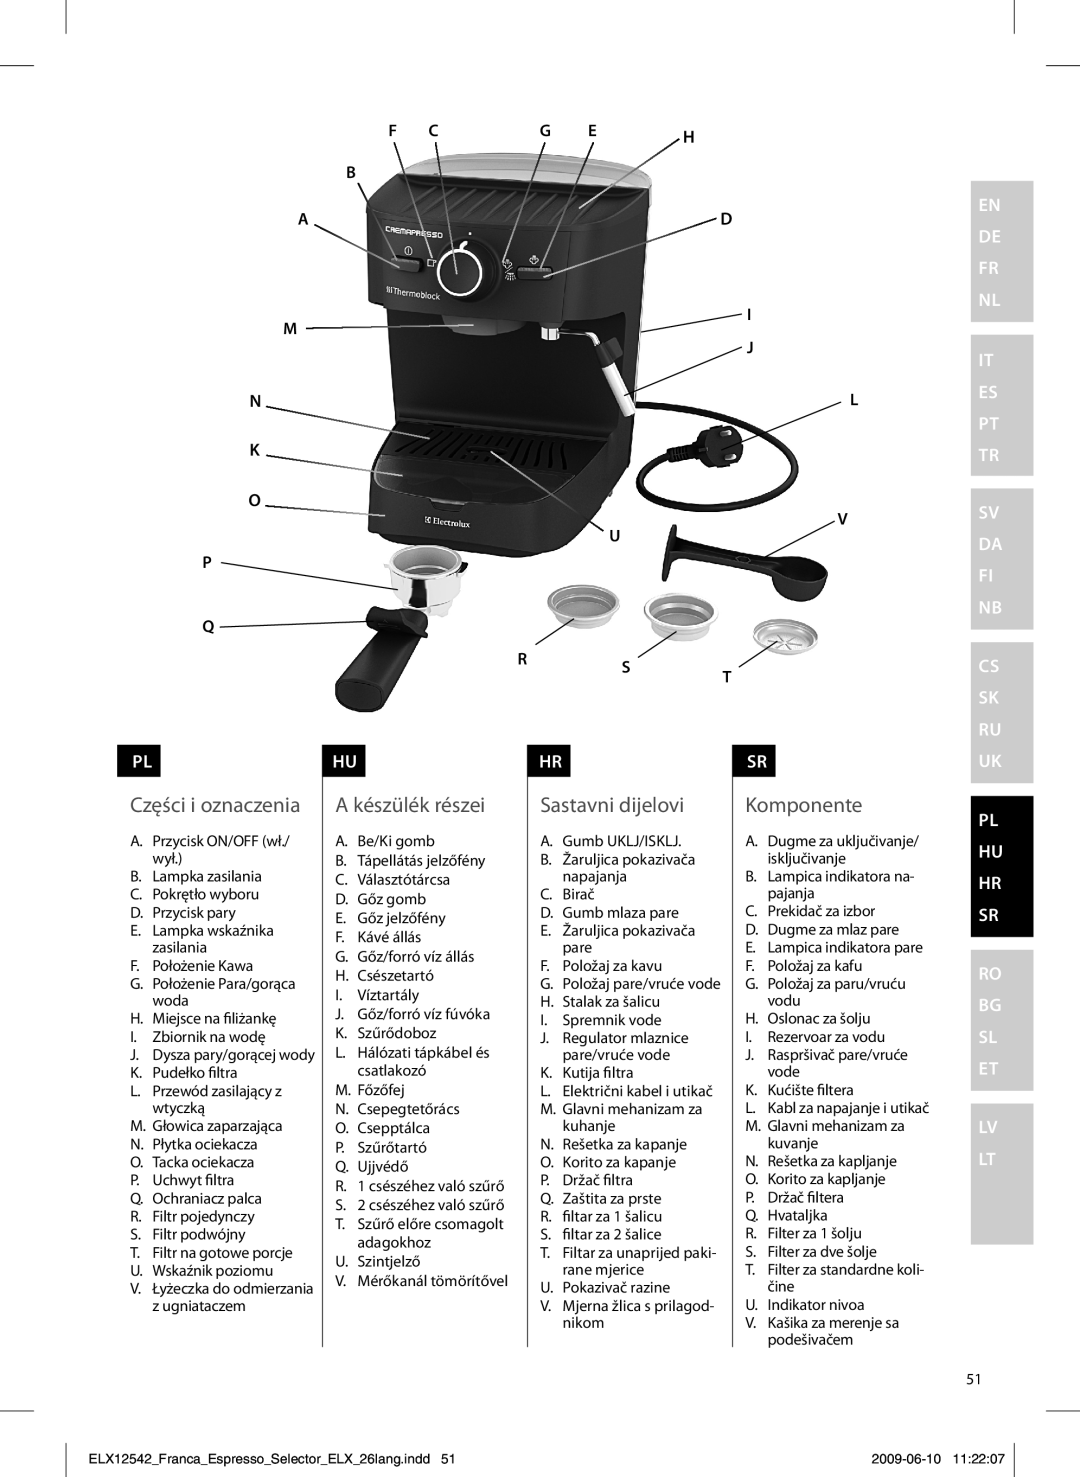 Electrolux EEA250 manual Części i oznaczenia, A készülék részei, Sastavni dijelovi, Komponente, en de fr nl, F Cg E H B Ad 